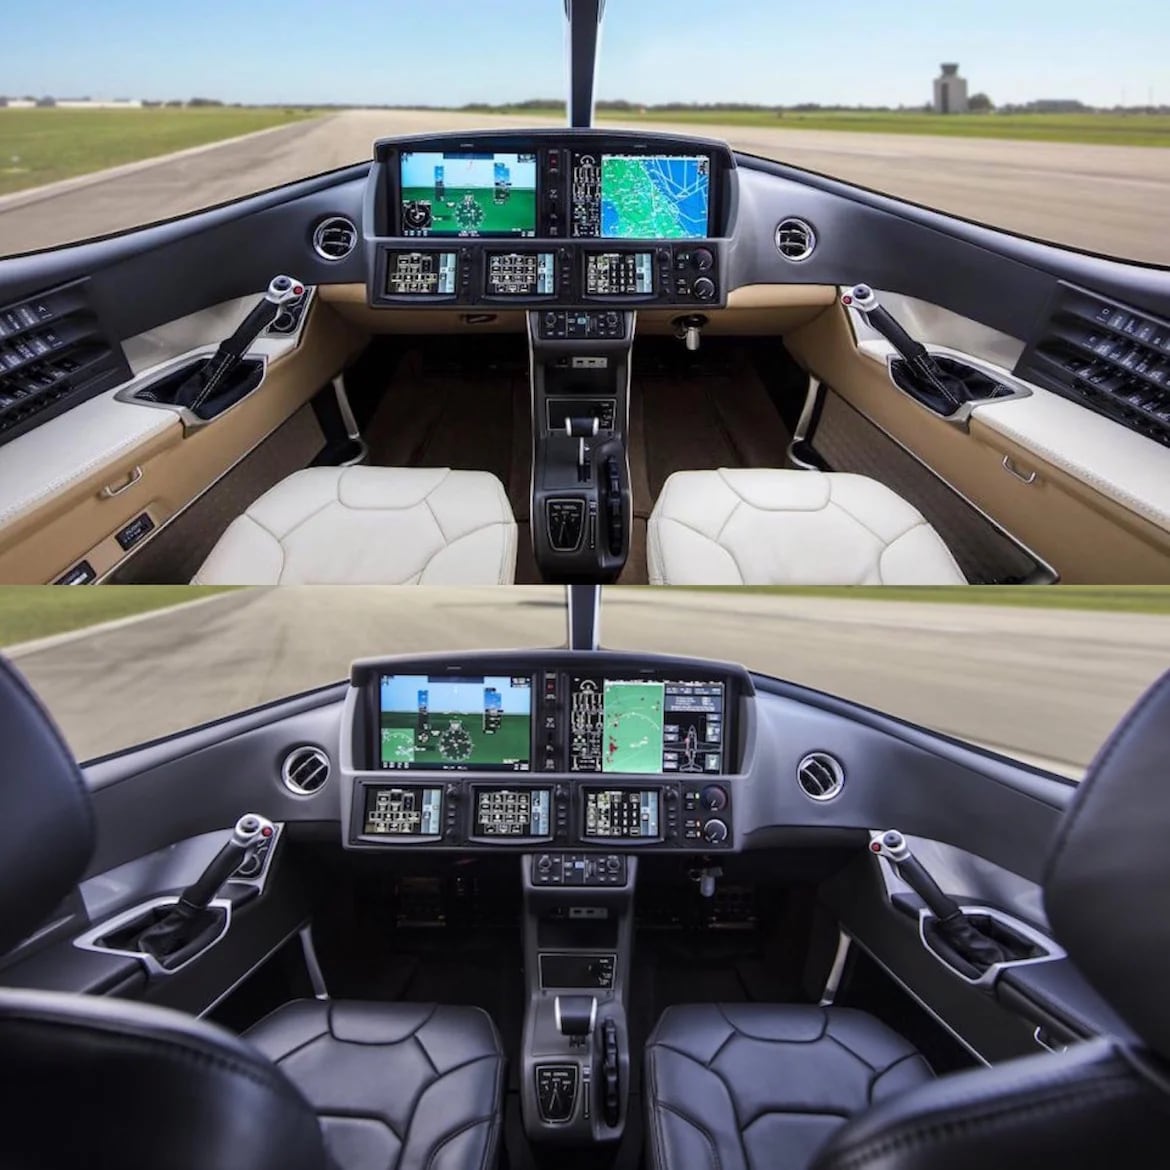 Gracias a su construcción en fibra de carbono el Cirrus ofrece grandes ventanas y un cockpit panorámico que brinda una excelente visibilidad. El comprador puede elegir entre una variedad de tonos de cueros para cubrir las butacas